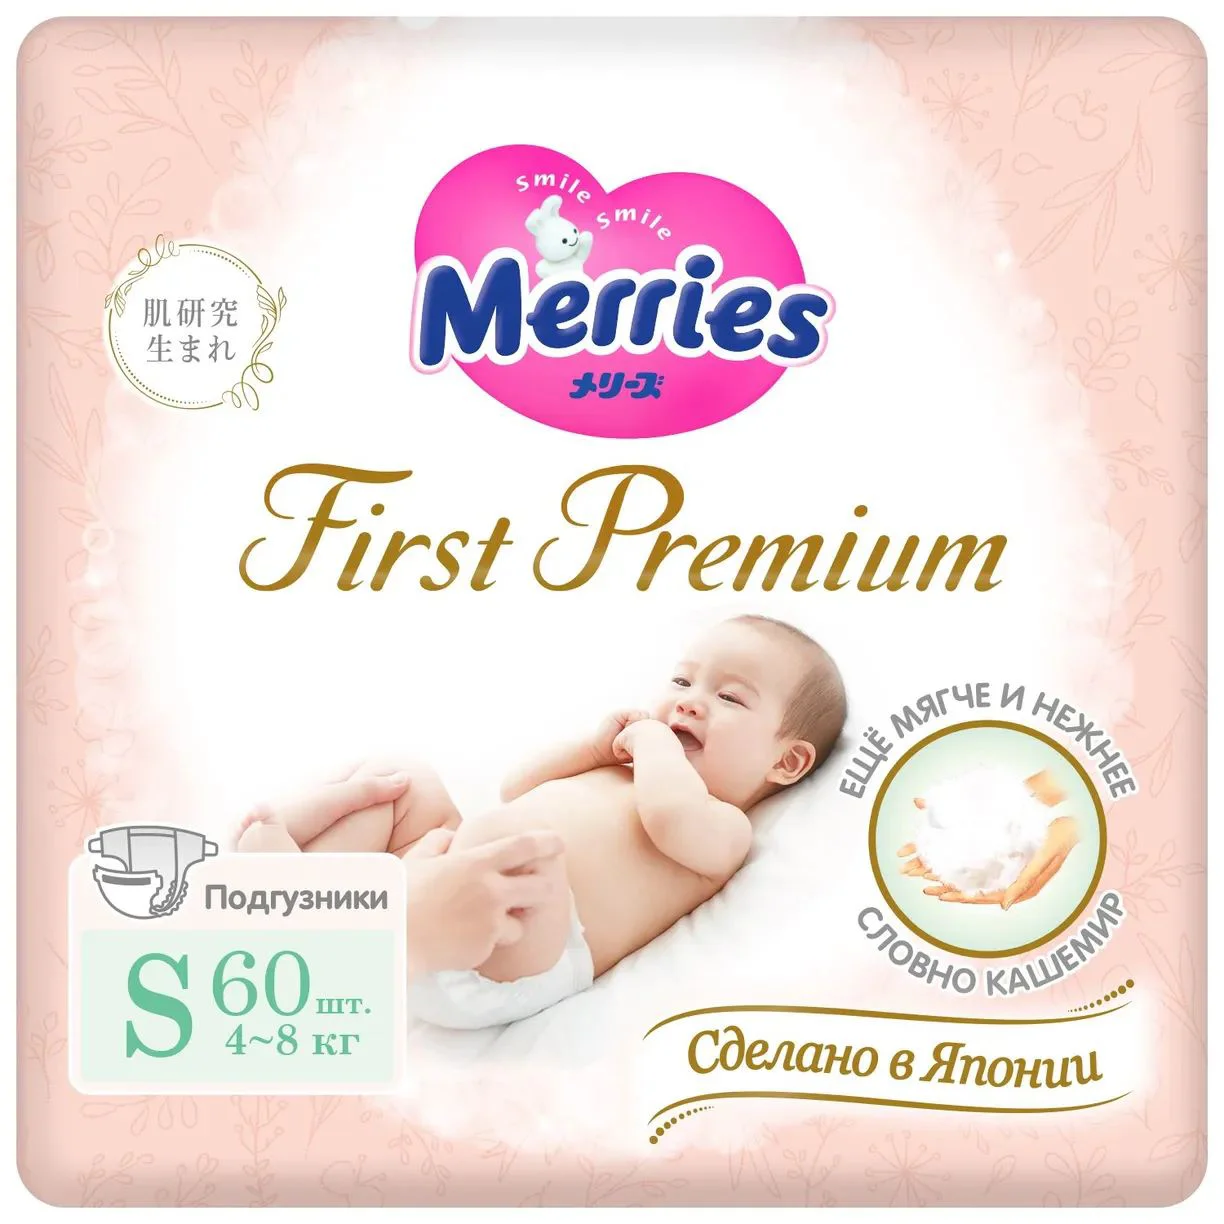 Подгузники Merries First Premium размер S (4-8 кг), 60 шт.